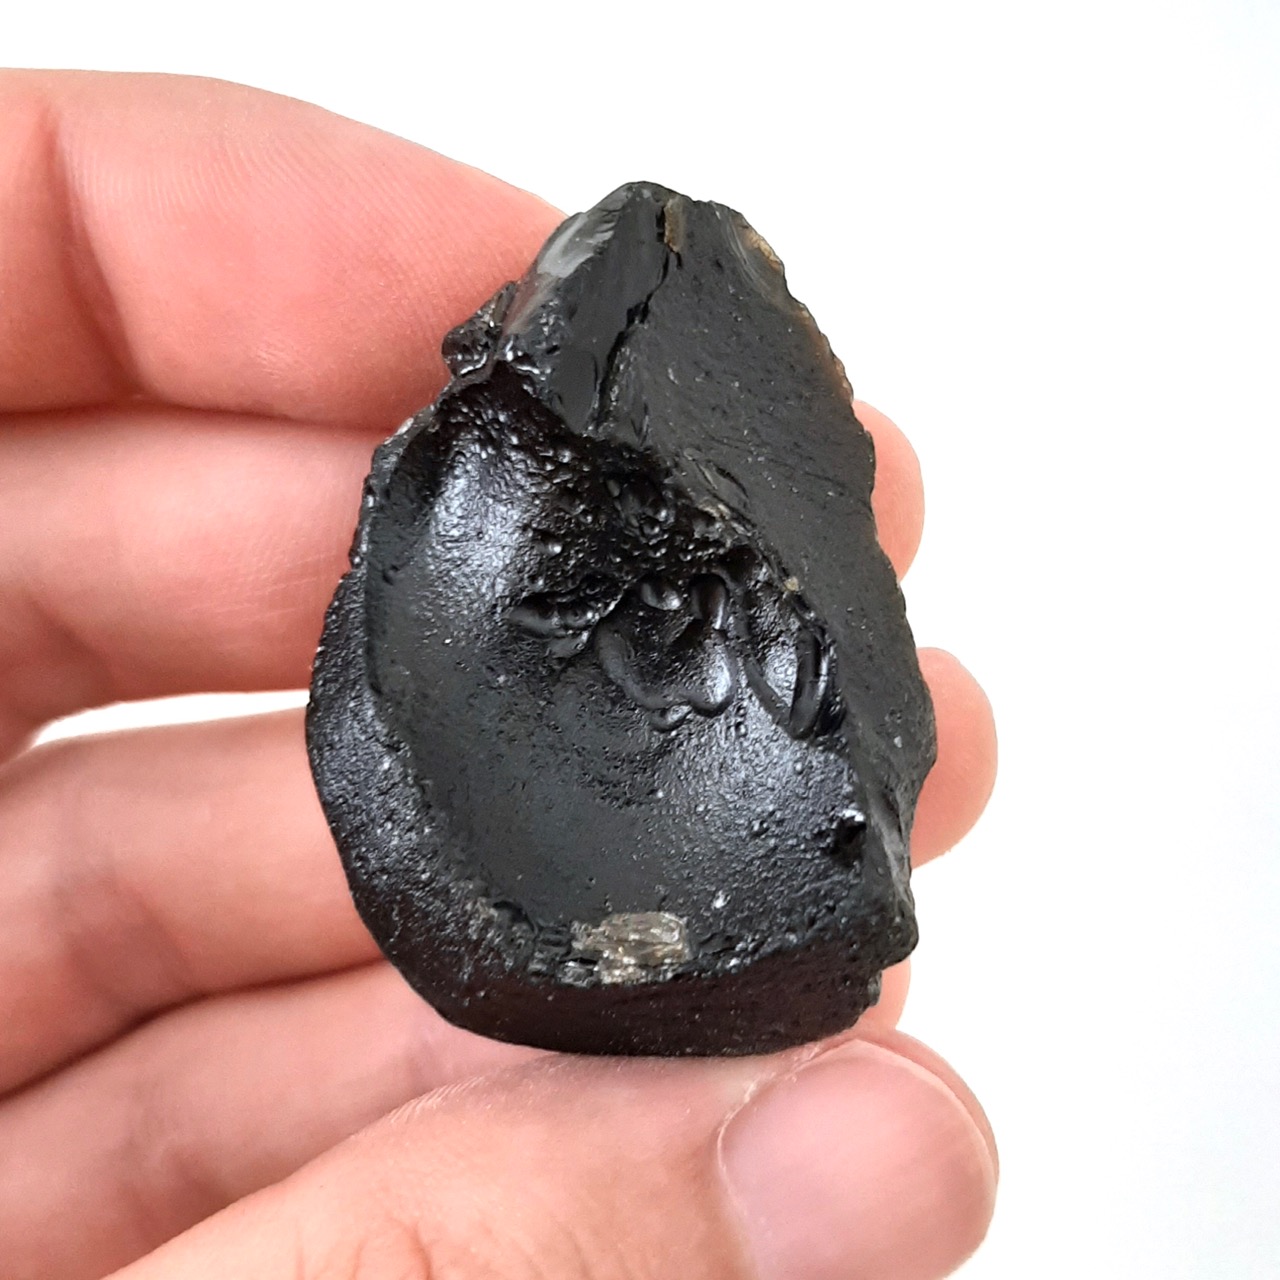 Indochinite. Meteorite impact glass.